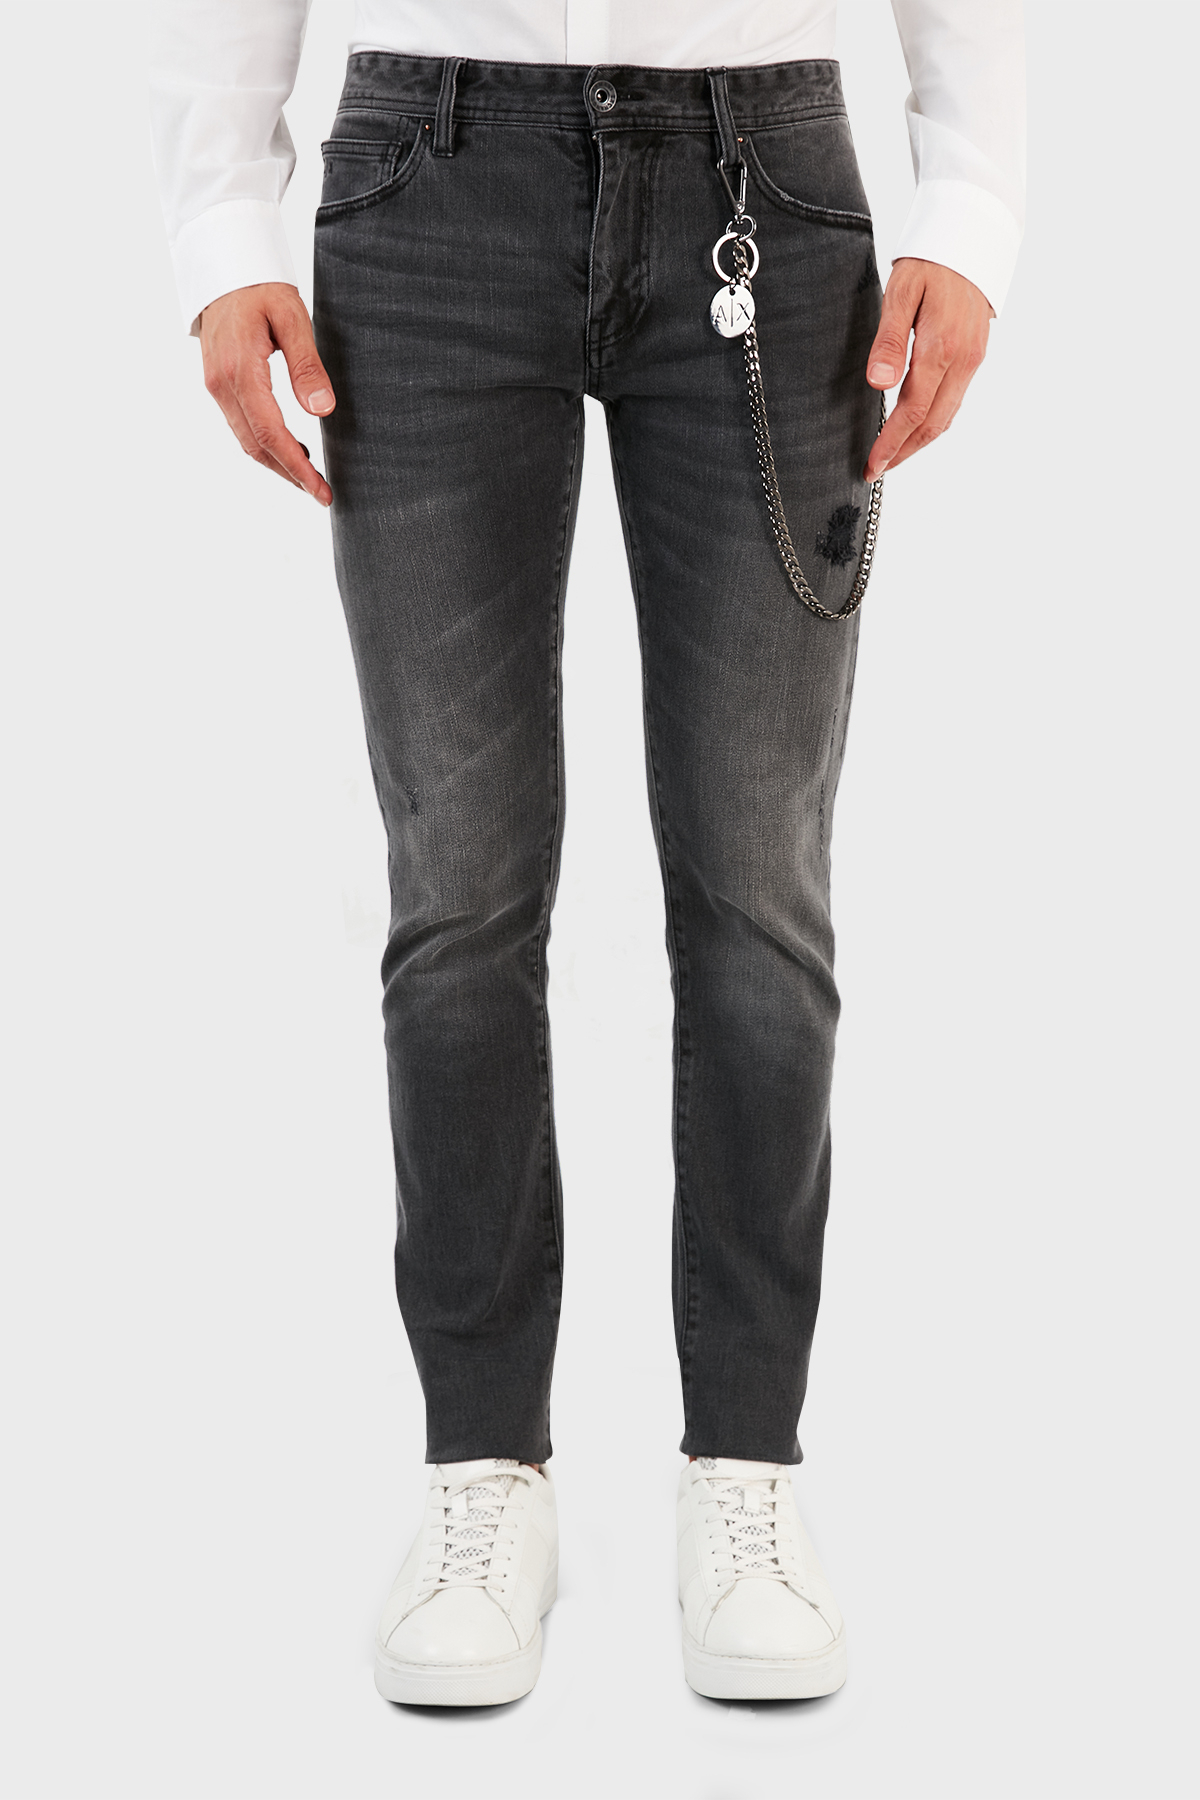 Armani Exchange Pamuklu Skinny Fit J14 Jeans Erkek Kot Pantolon 6KZJ14 Z3N3Z 0903 GRİ